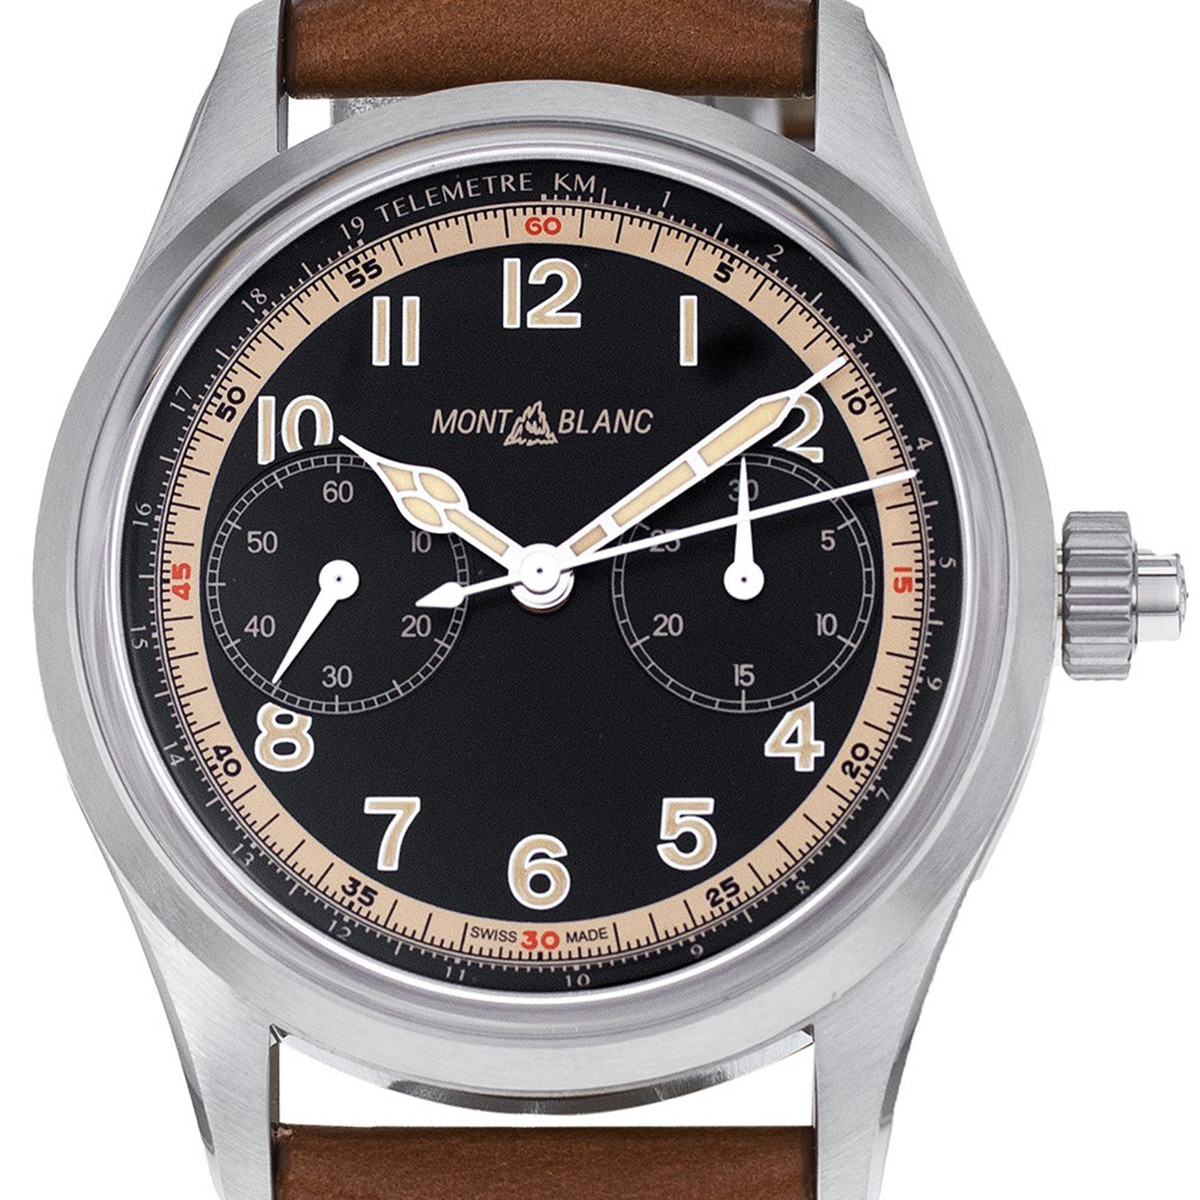 Montre d'occasion Montblanc 1858 homme chronographe automatique acier bracelet cuir marron